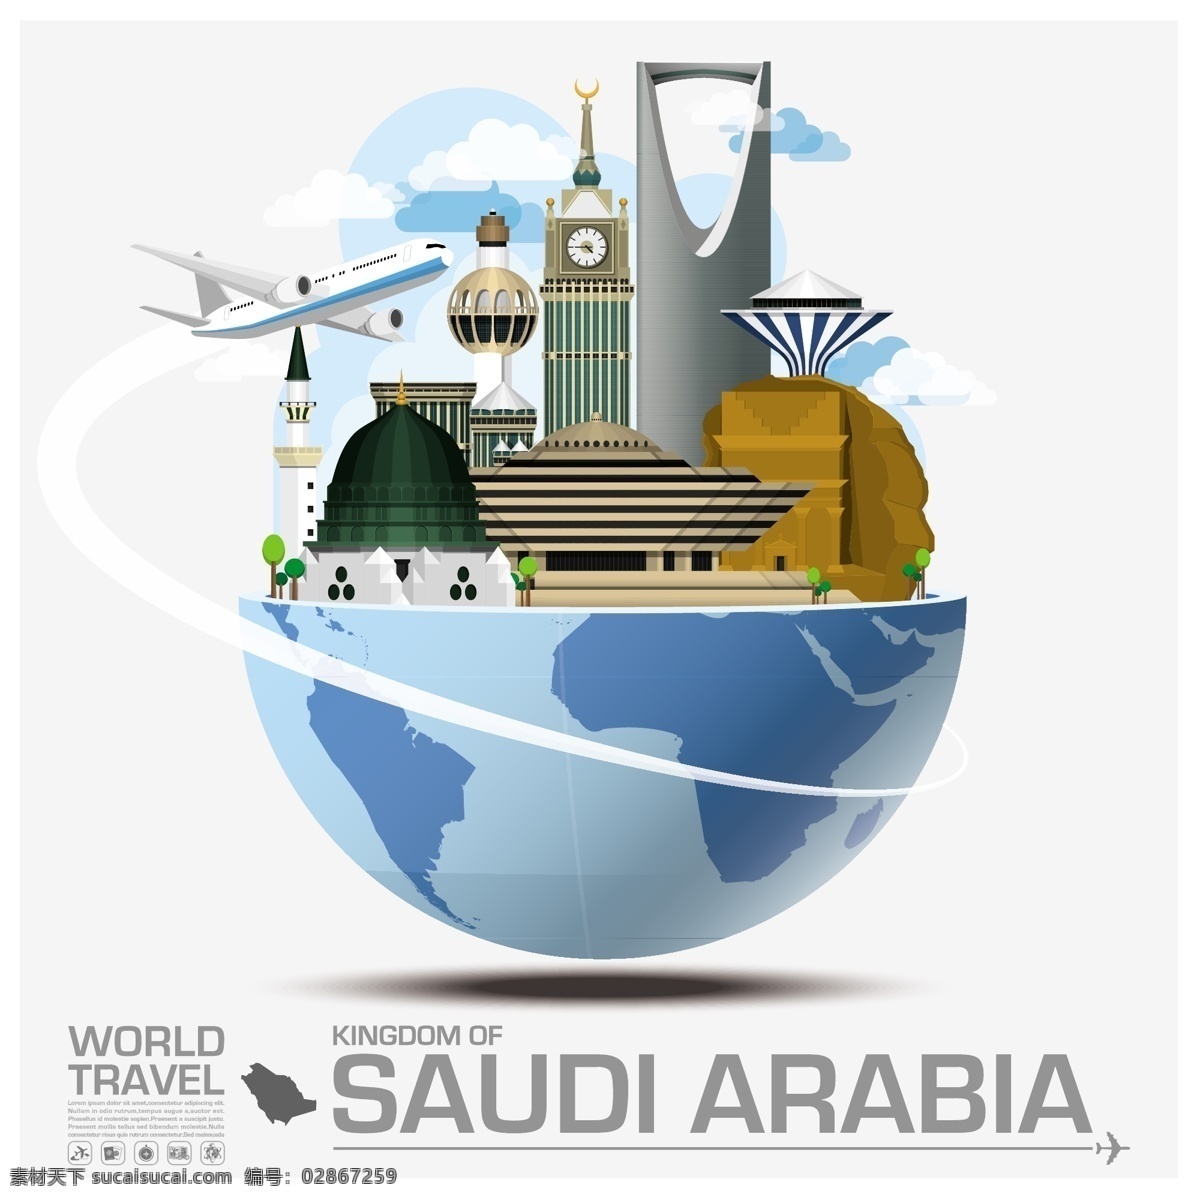 沙特阿拉伯 特色 建筑 飞机 旅行 创意 沙特 阿位伯 旅游